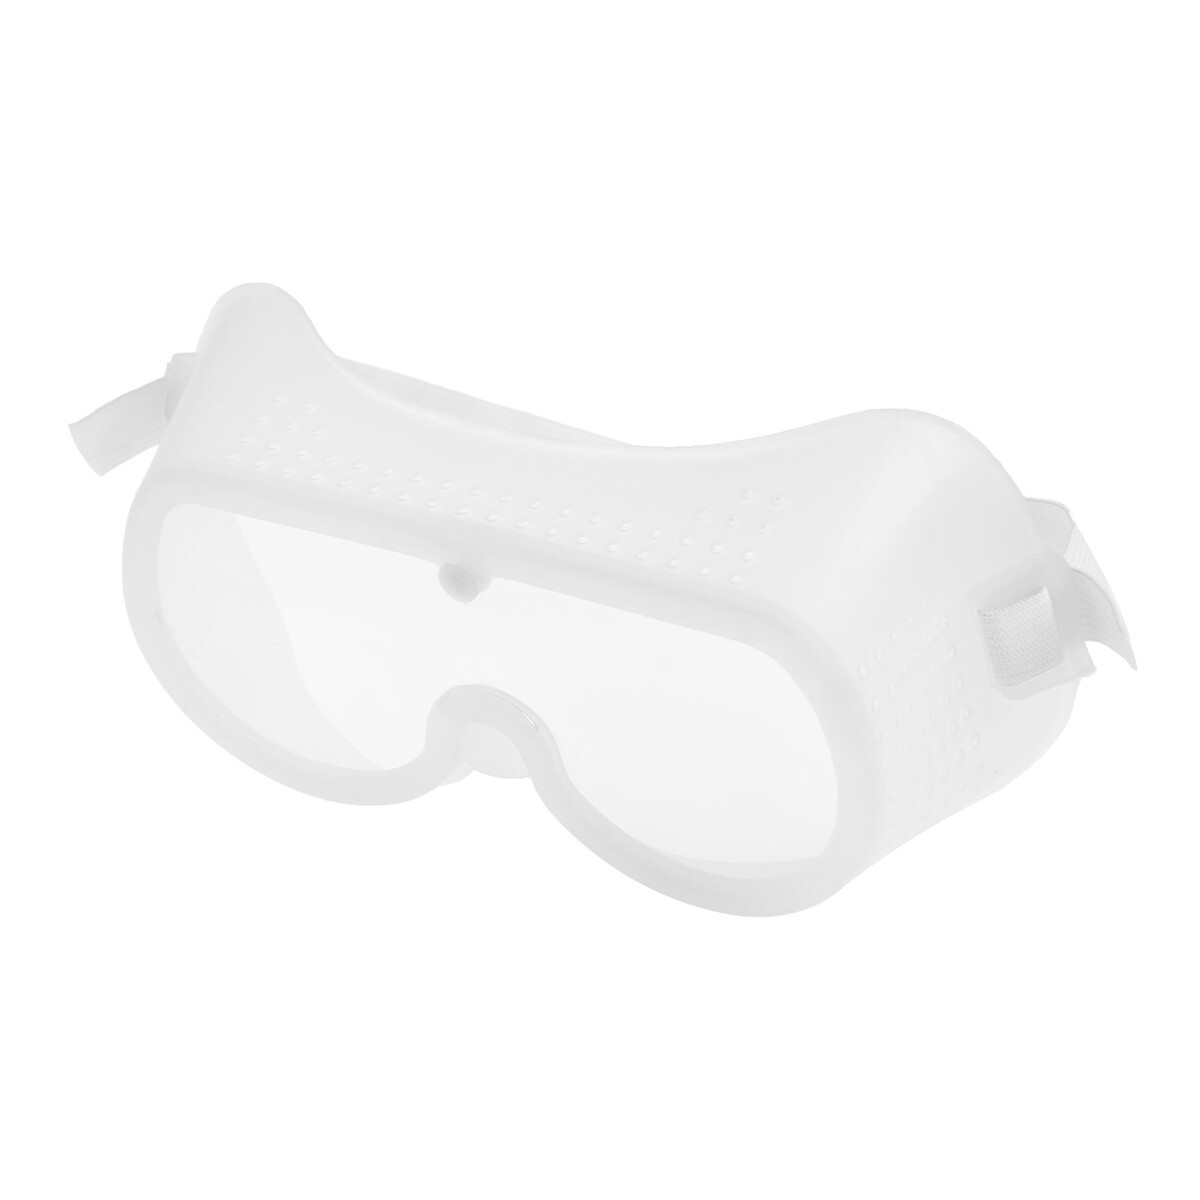 Очки защитные тундра, с поликарбонатными линзами, прозрачные, на резинке очки защитные открытого типа прозрачные